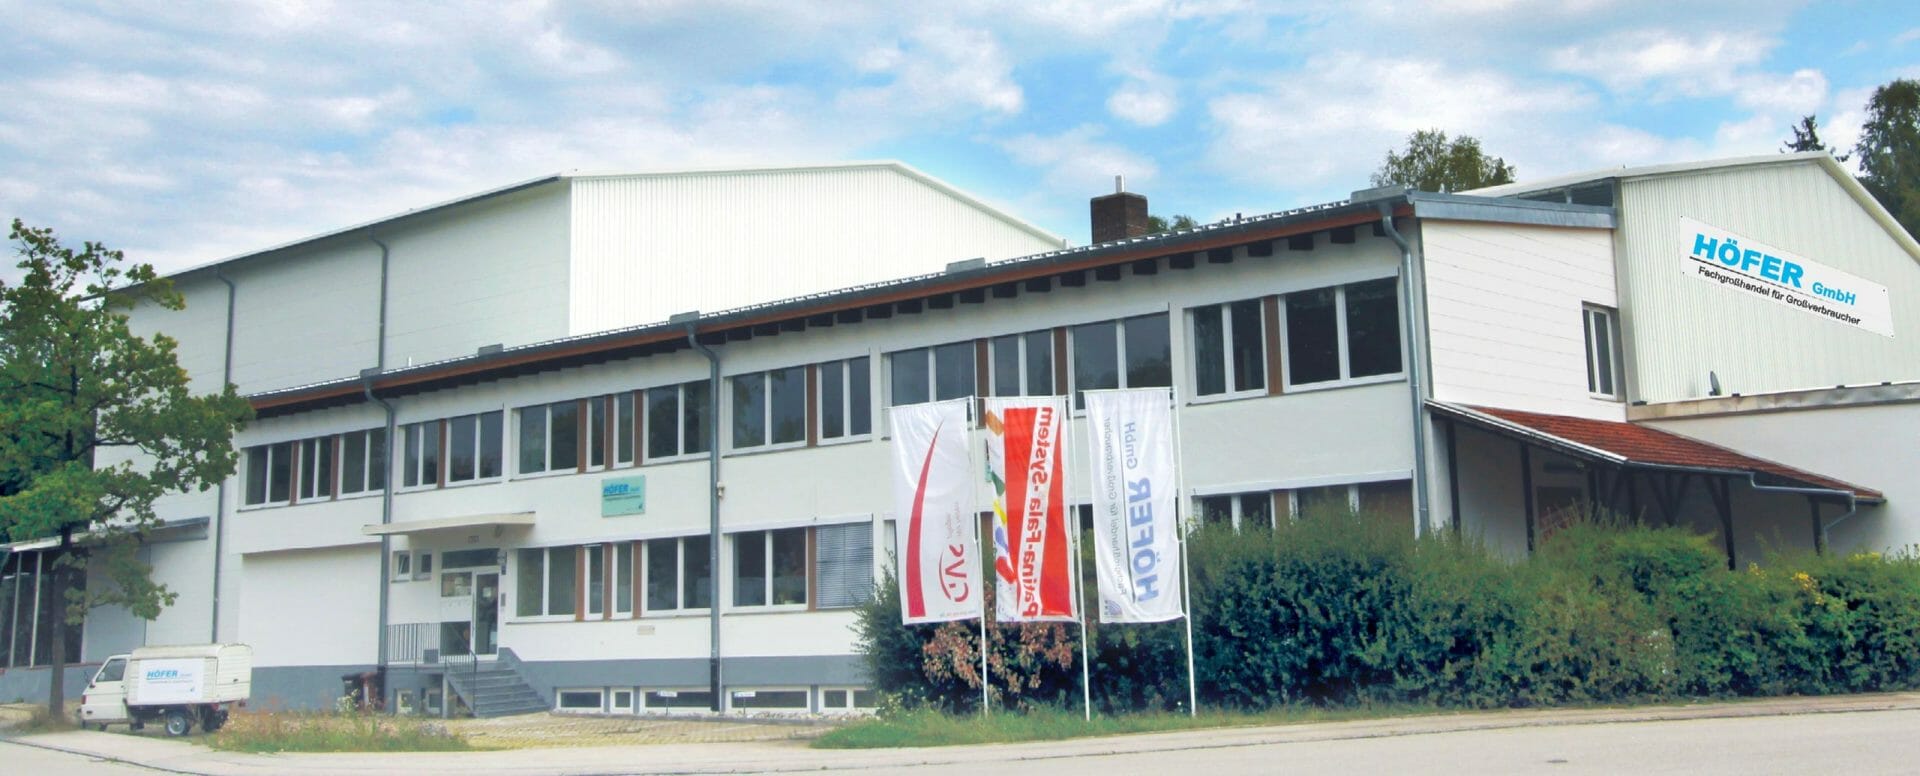 Betriebsgebäude der Höfer GmbH in Hohenbrunn bei München